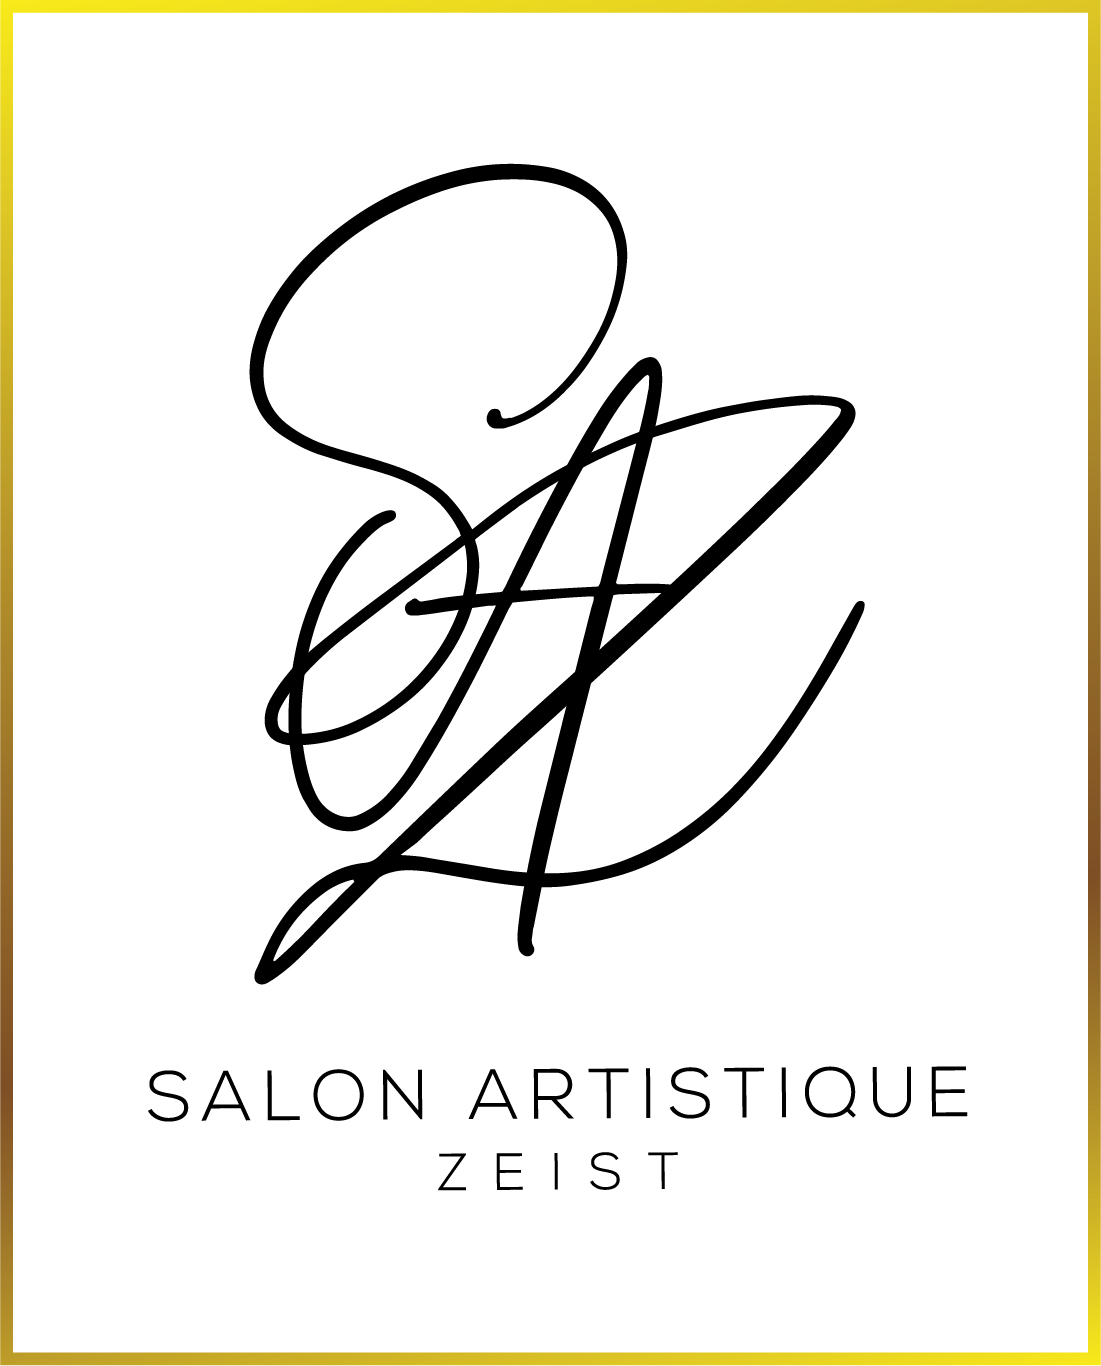 Salon Artistique Zeist